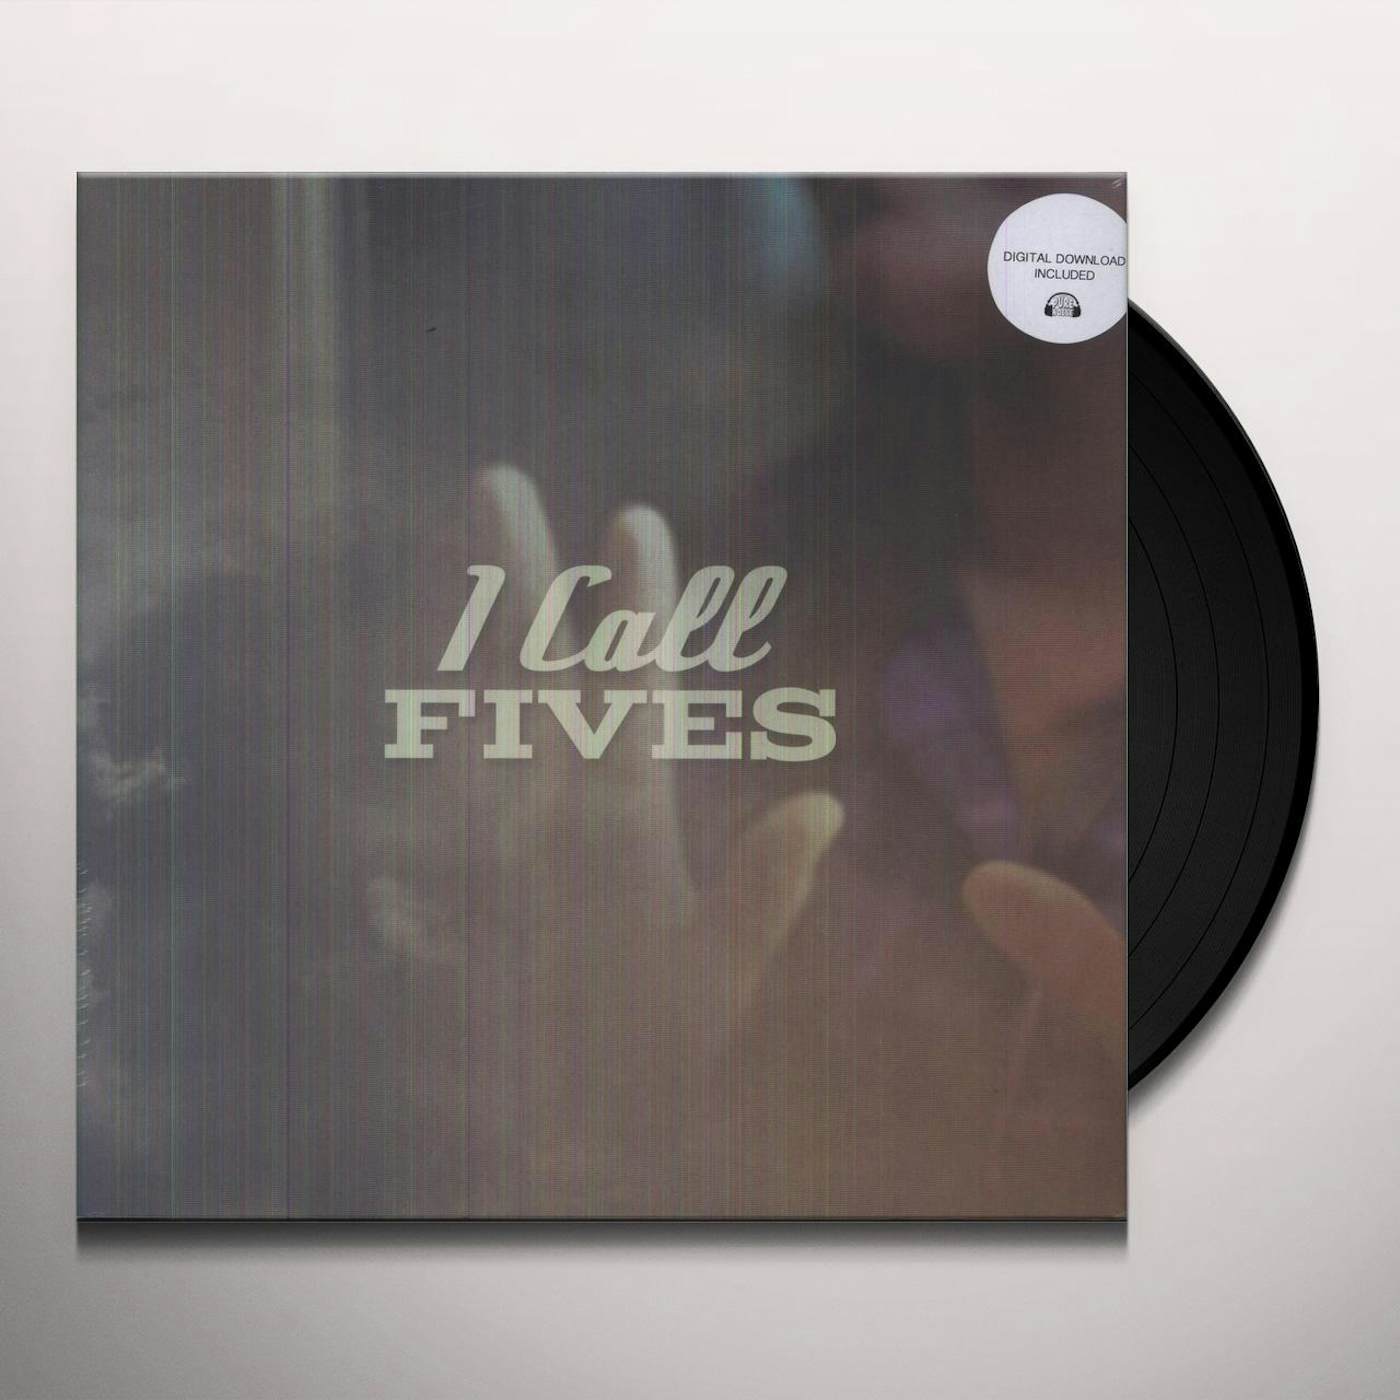 I Call Fives Vinyl Record